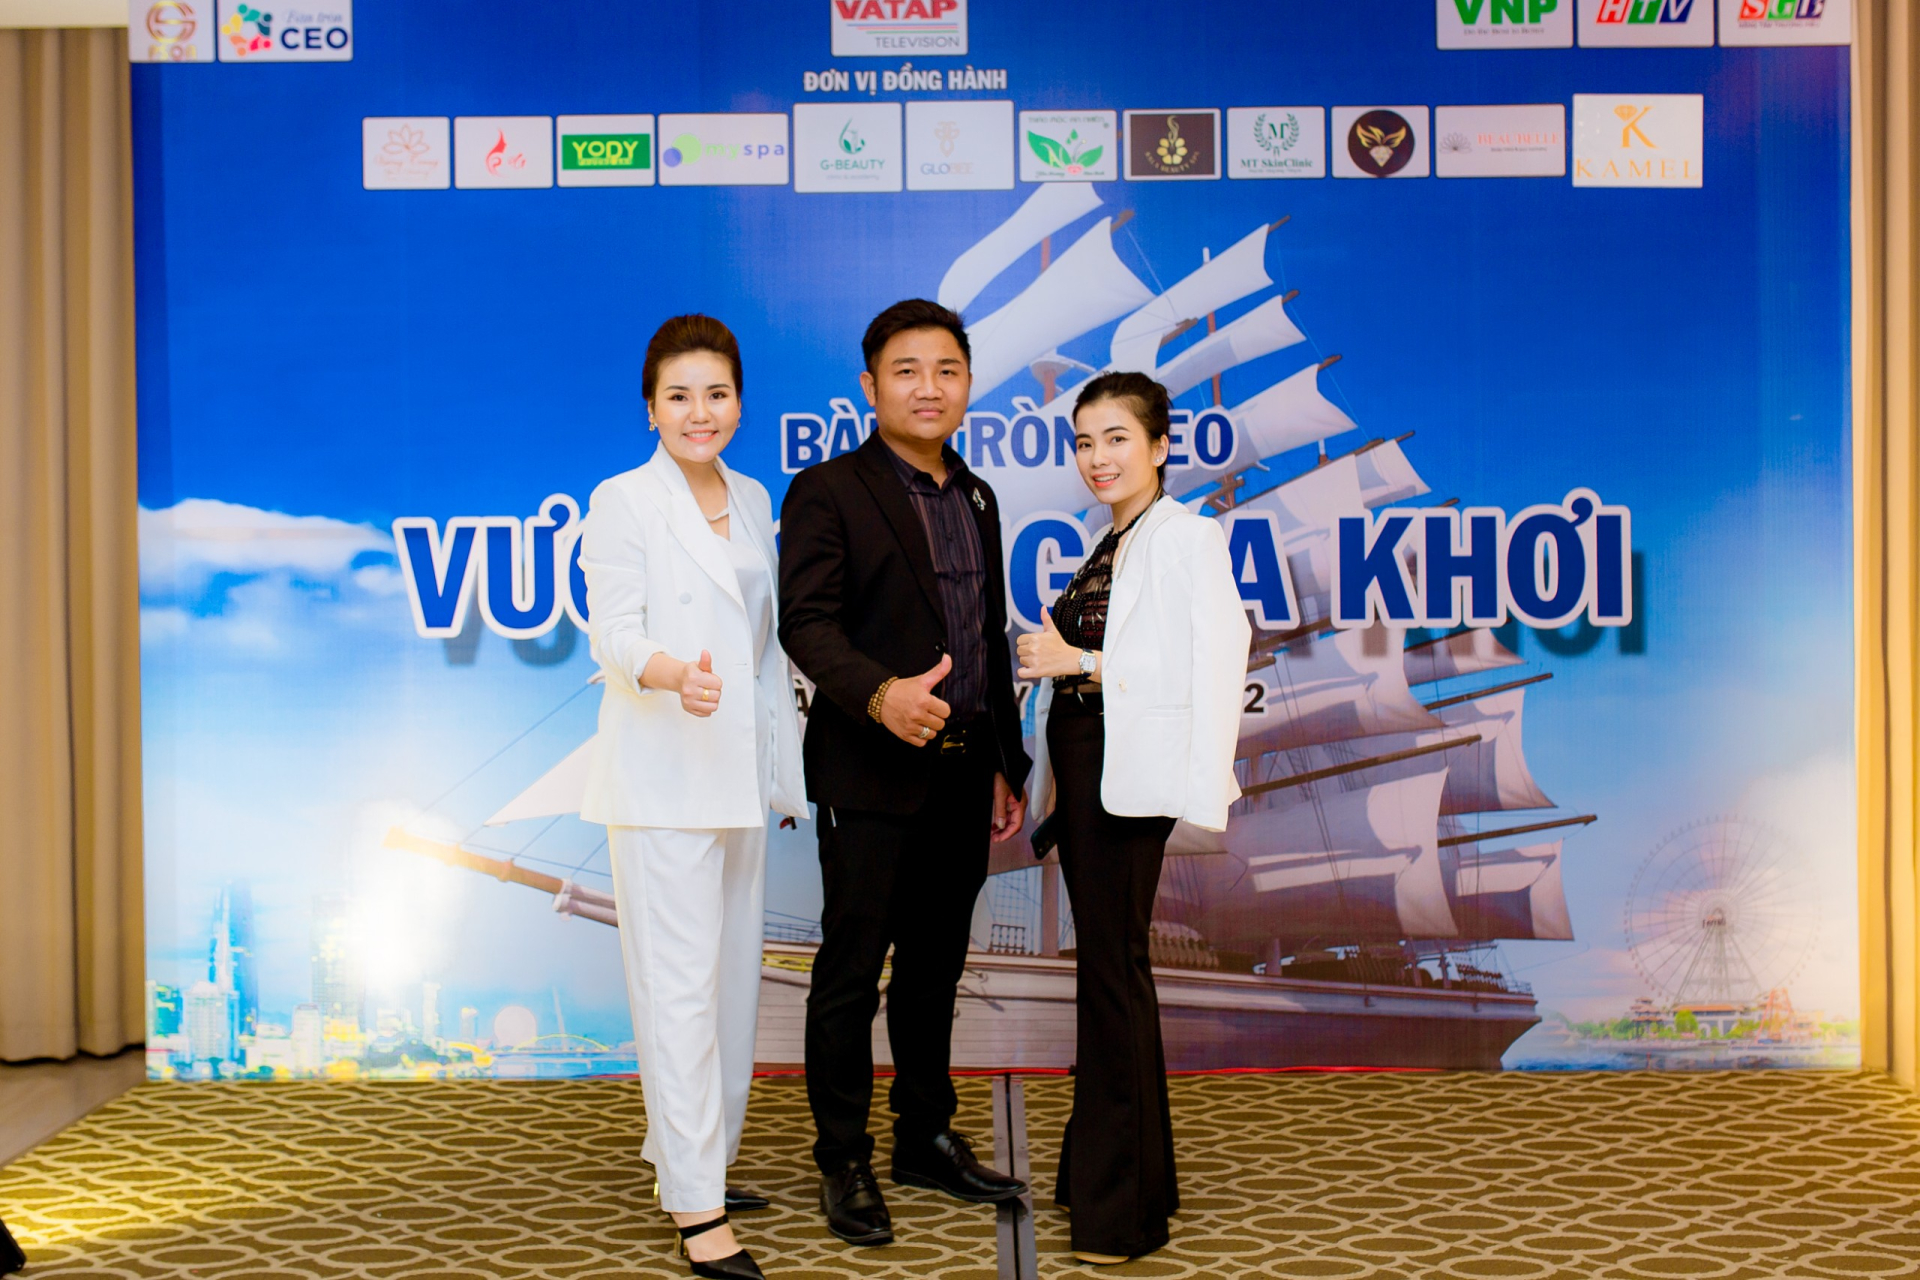 Phan Văn Khôi - Trưởng ban tổ chức “Bàn tròn CEO Đà Nẵng”